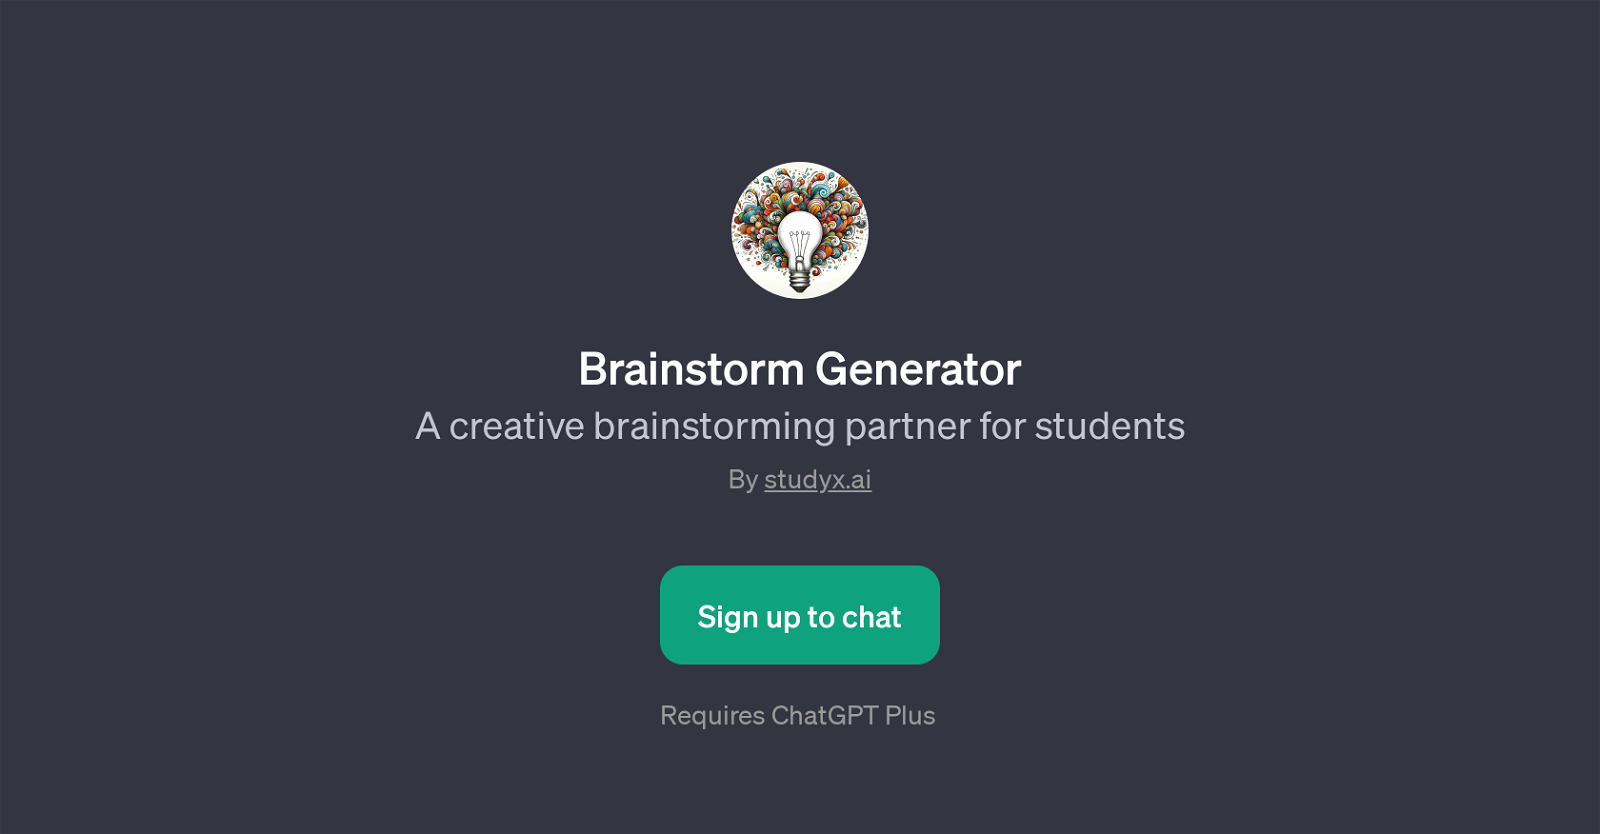 Brainstorm Generator website